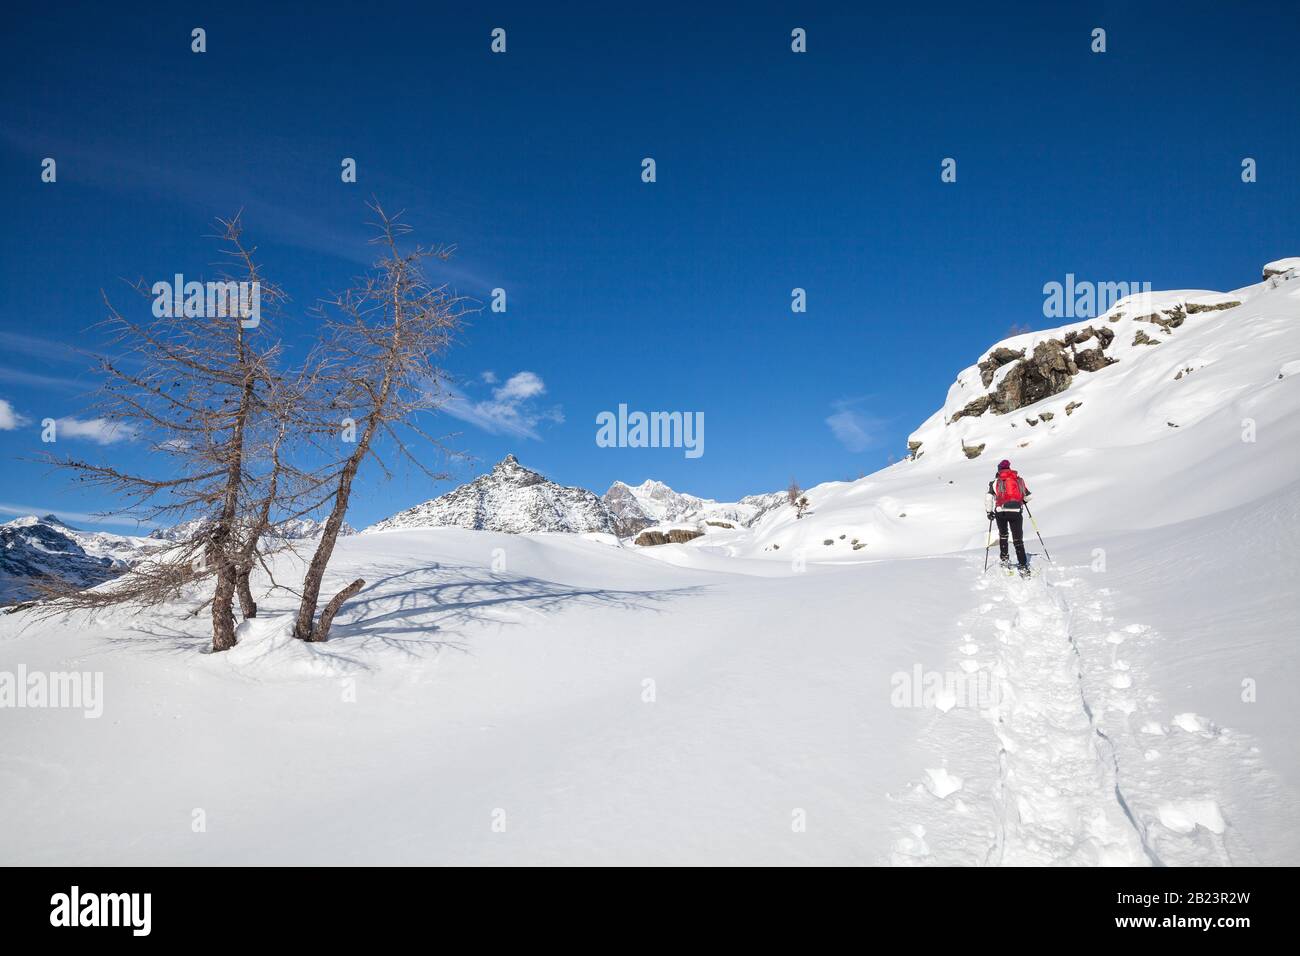 Valmalenco (IT) - randonnée en raquettes dans la neige fraîche Banque D'Images